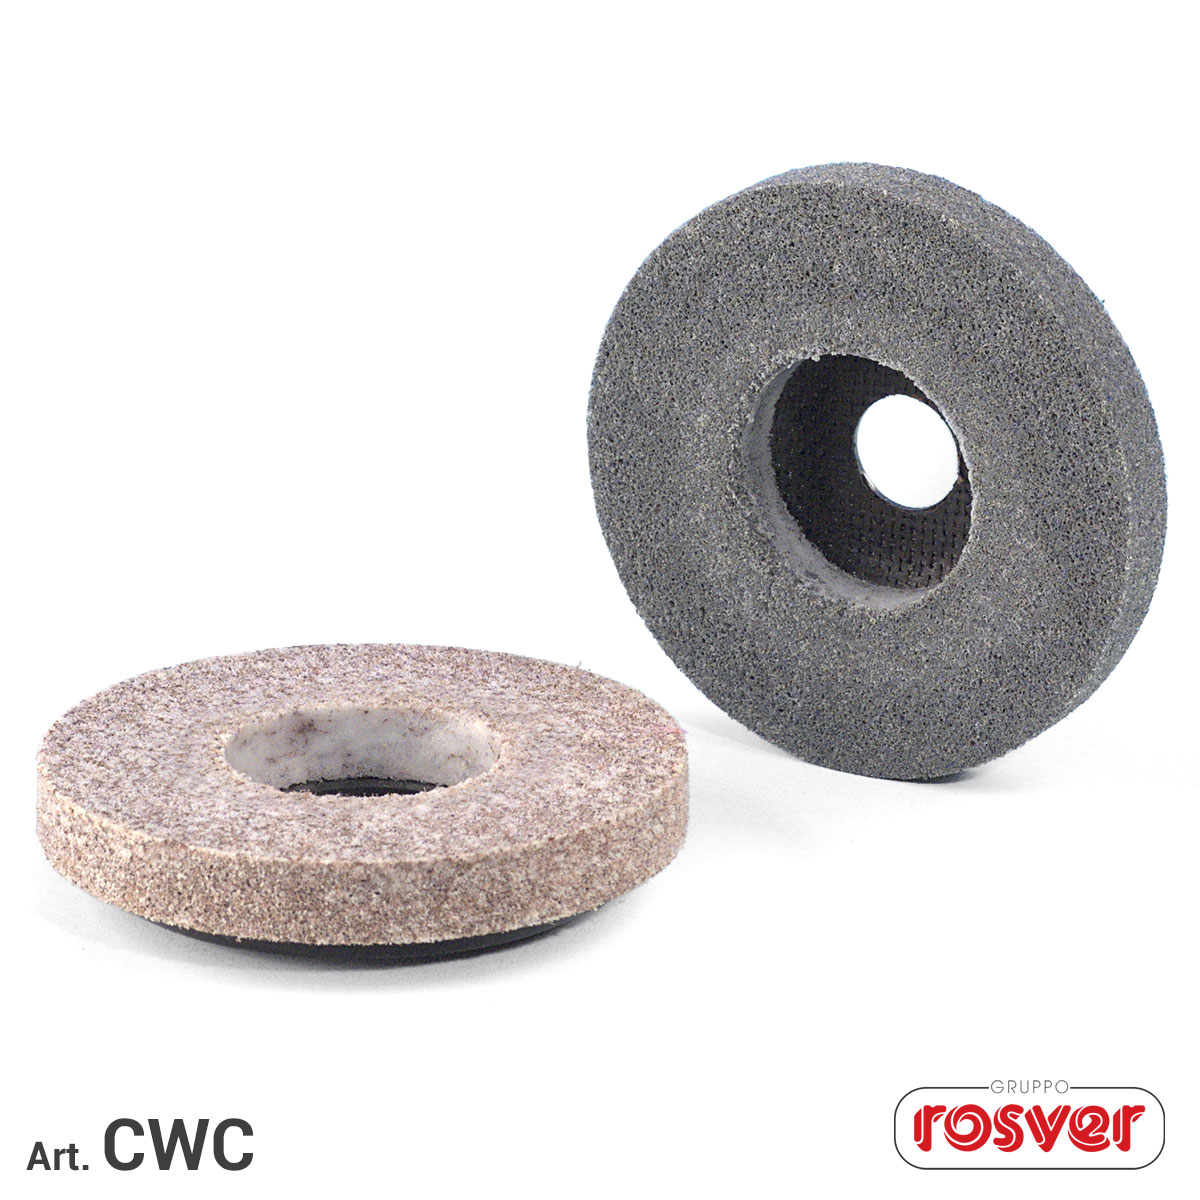 GBF Abrasive Rubber Blocks - Rosver Abrasives